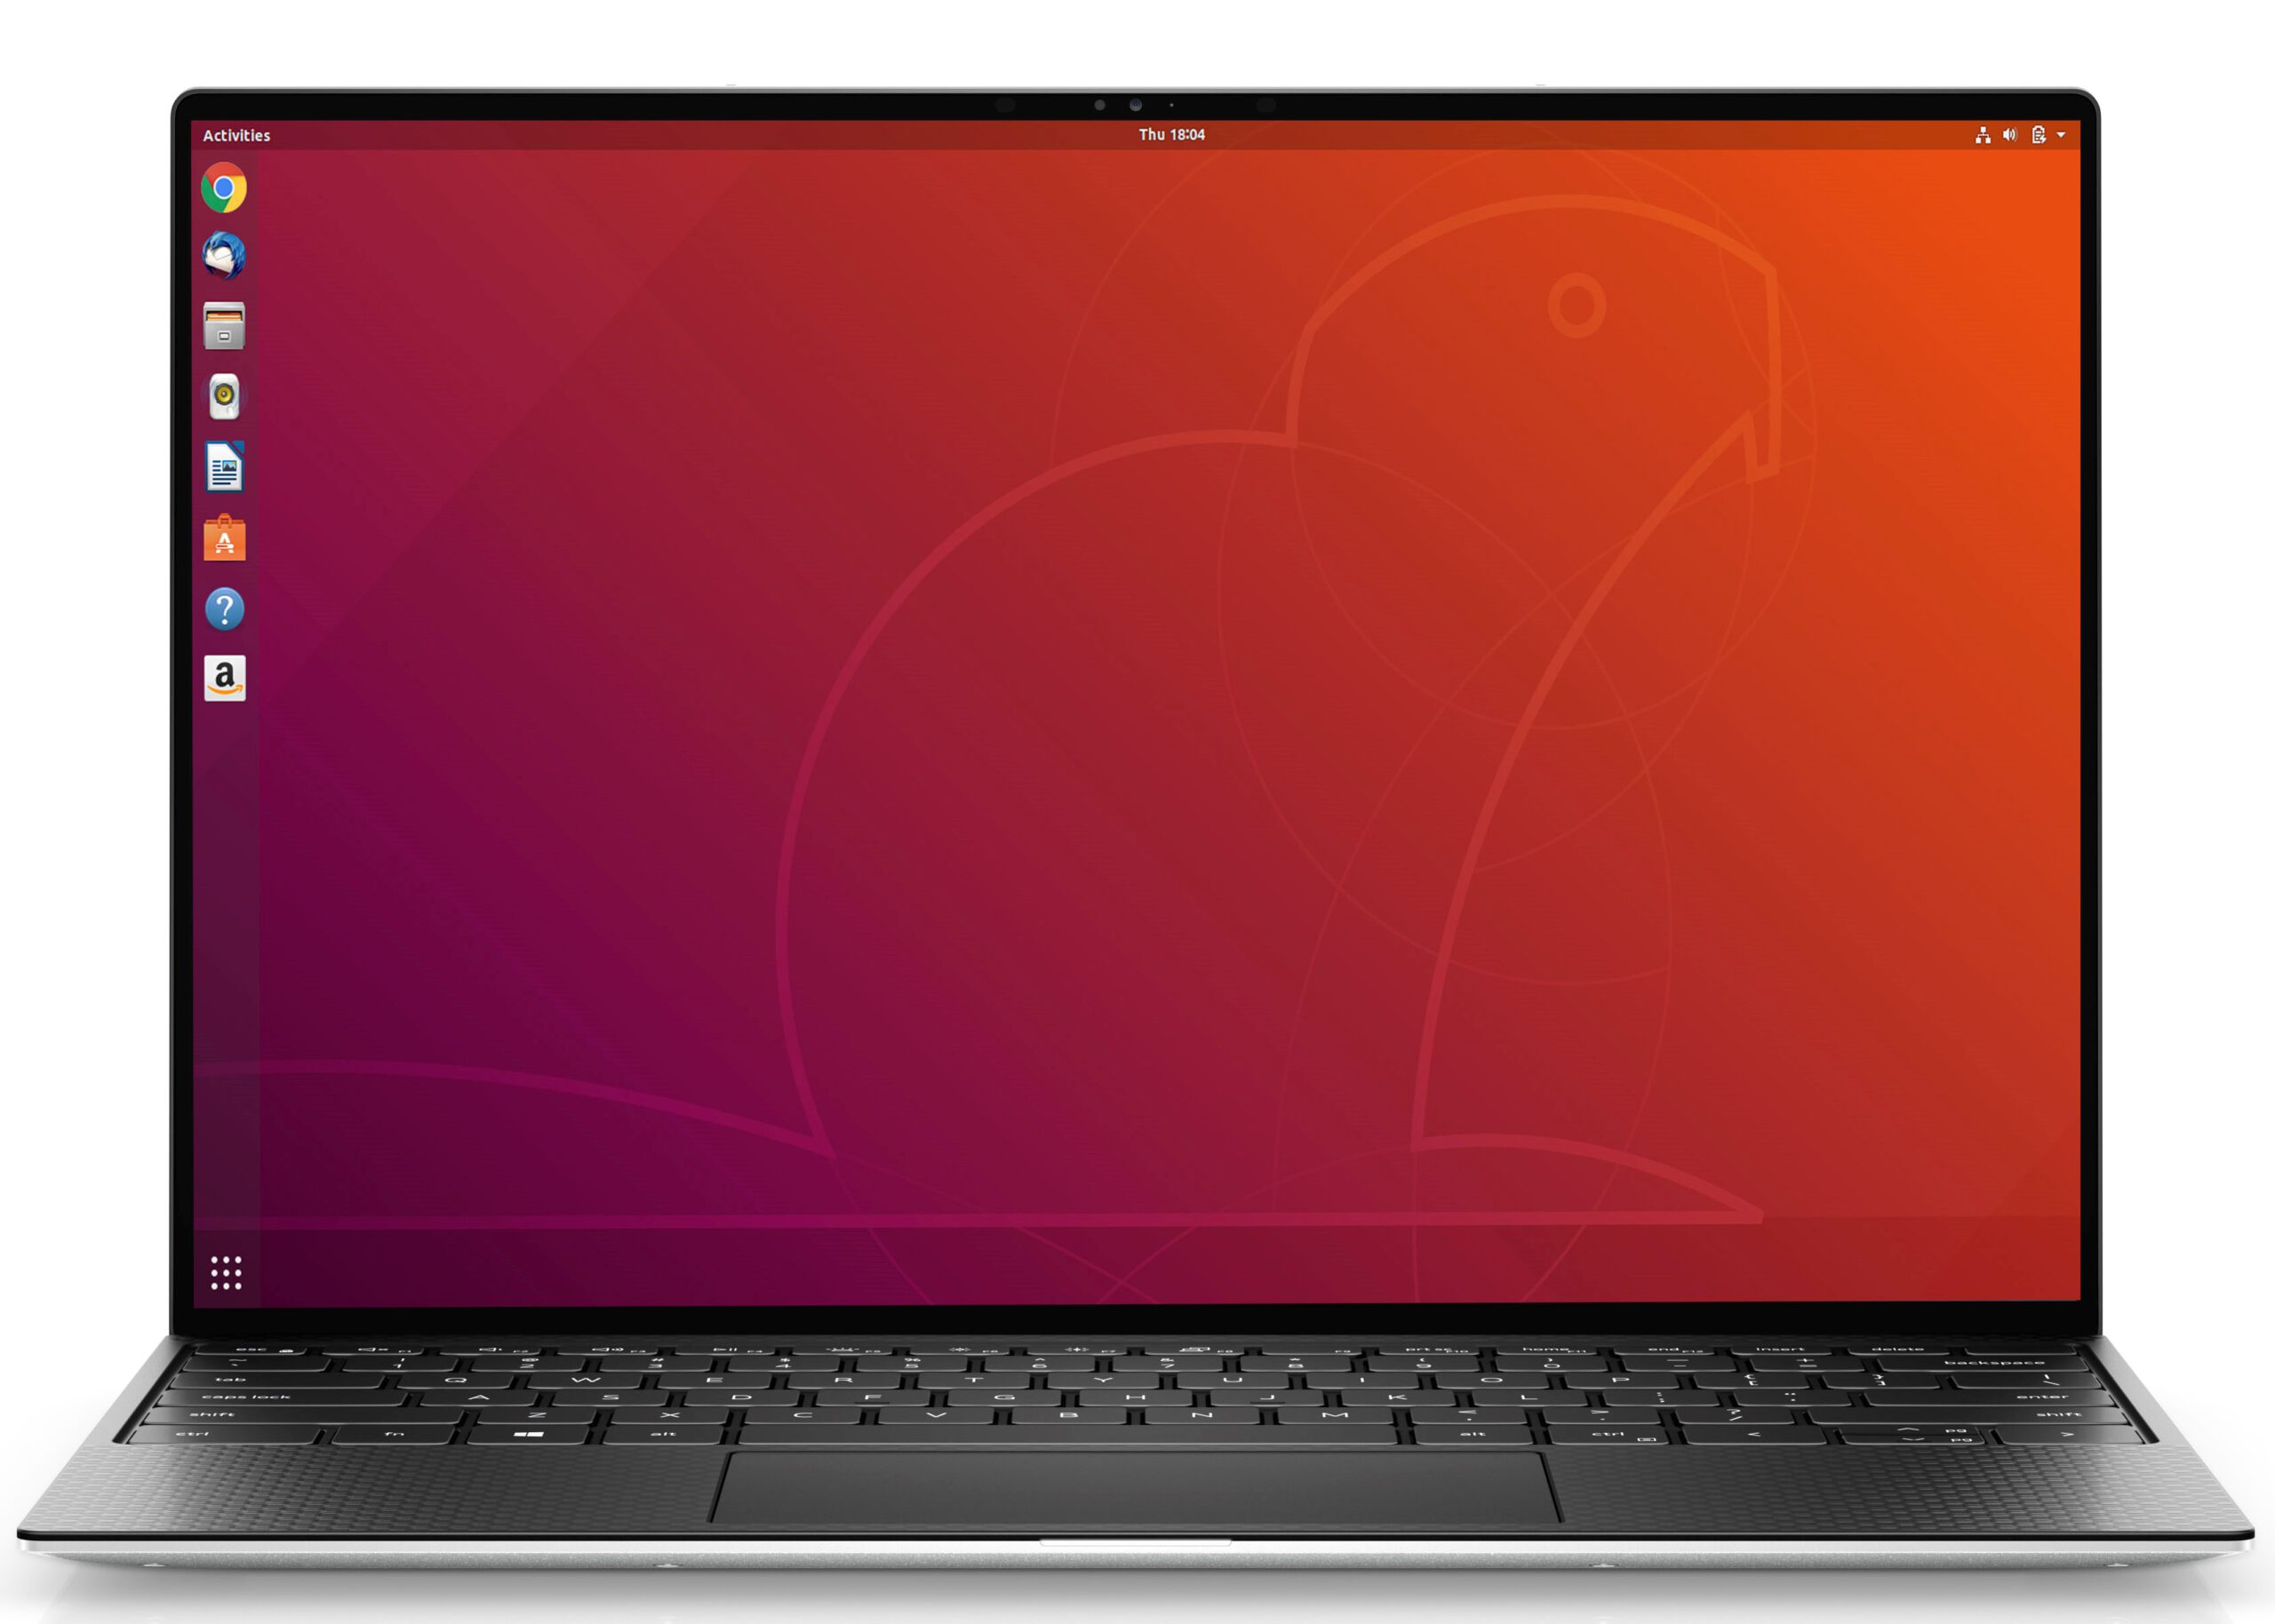 Dell Unveils 2020 XPS 13 Linux Laptop with Fingerprint Reader, Ubuntu